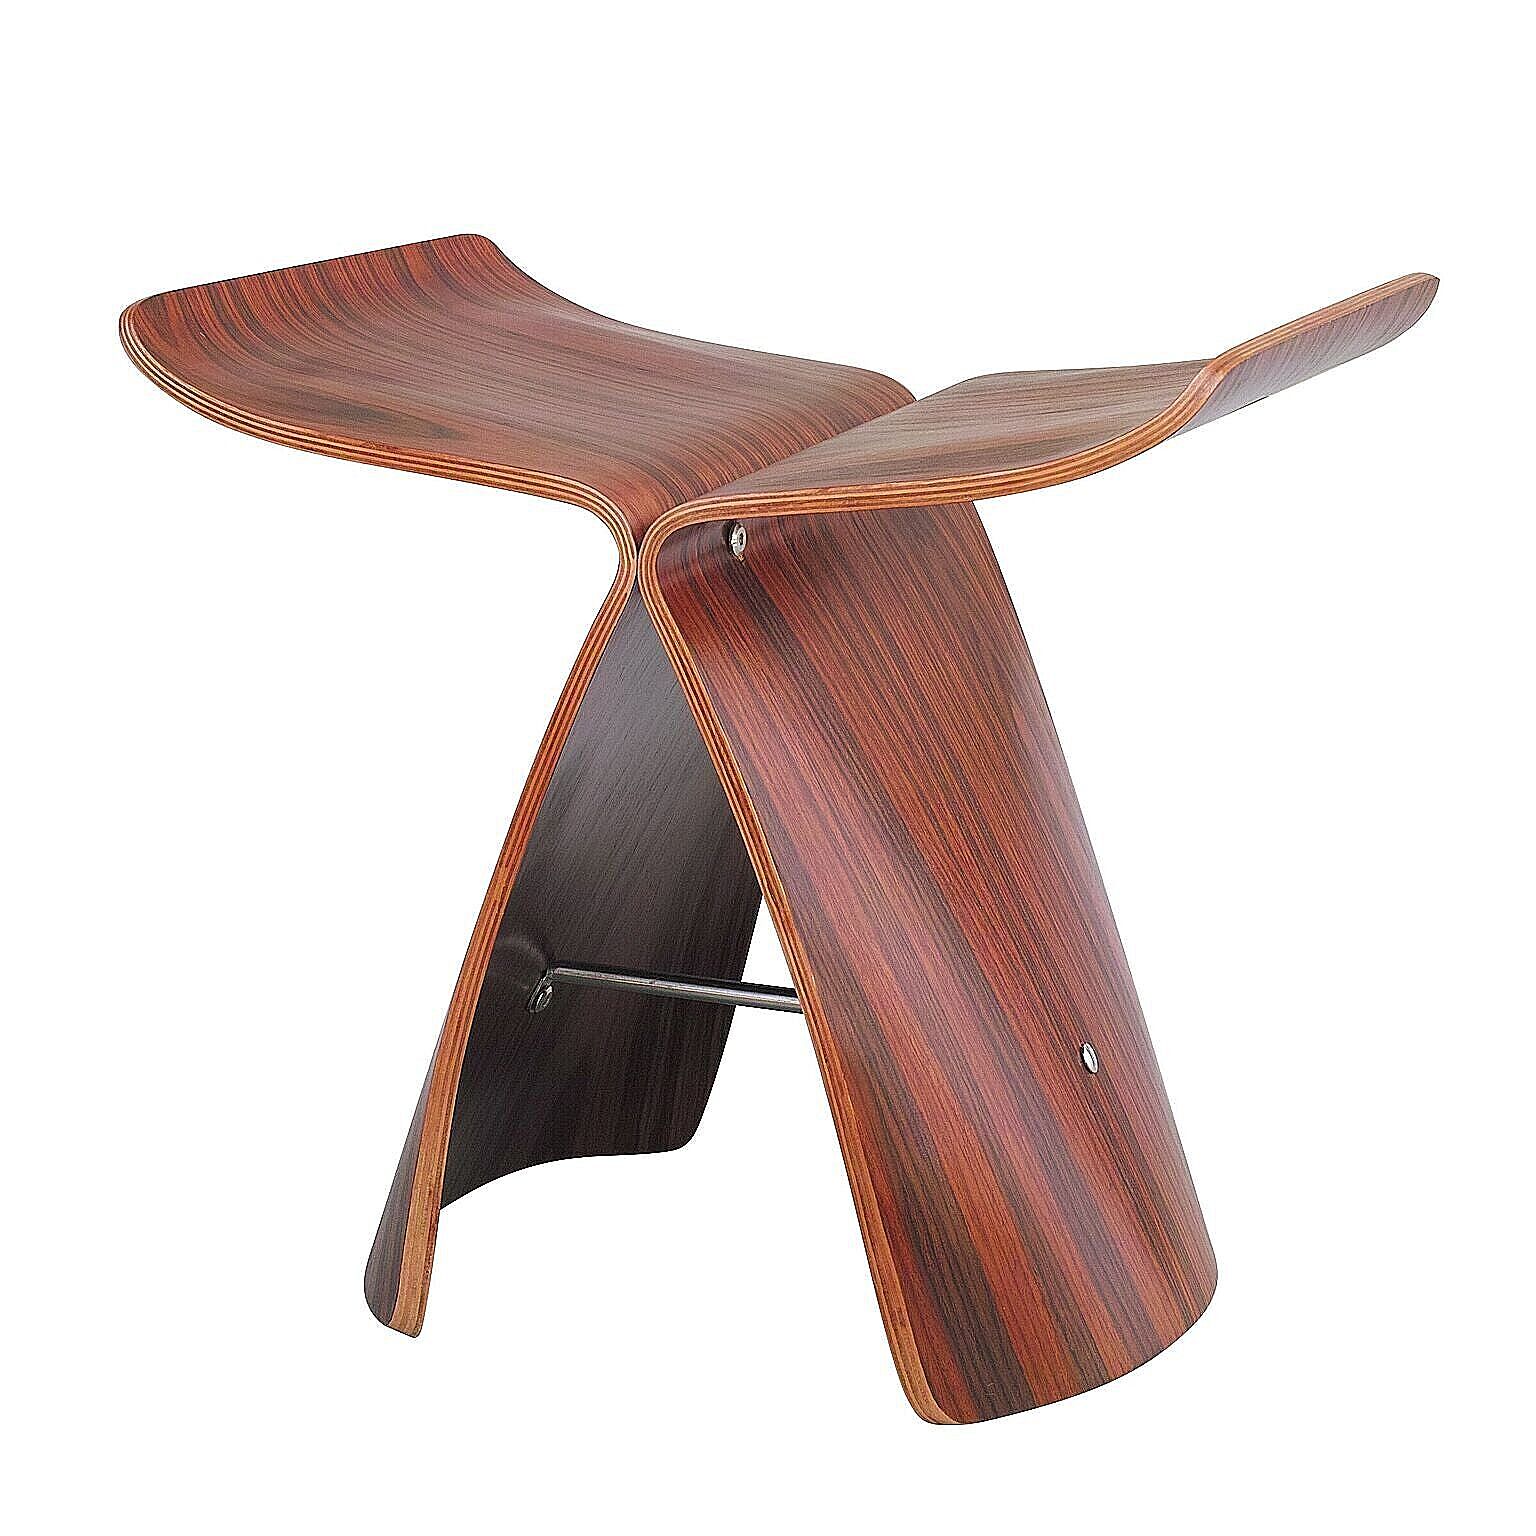 ウイングスツール 成形合板 木製スツール ローズウッド ウォールナット メープル | デザイナーズ リプロダクト デザイナー ブラウン クッション 椅子 オットマン